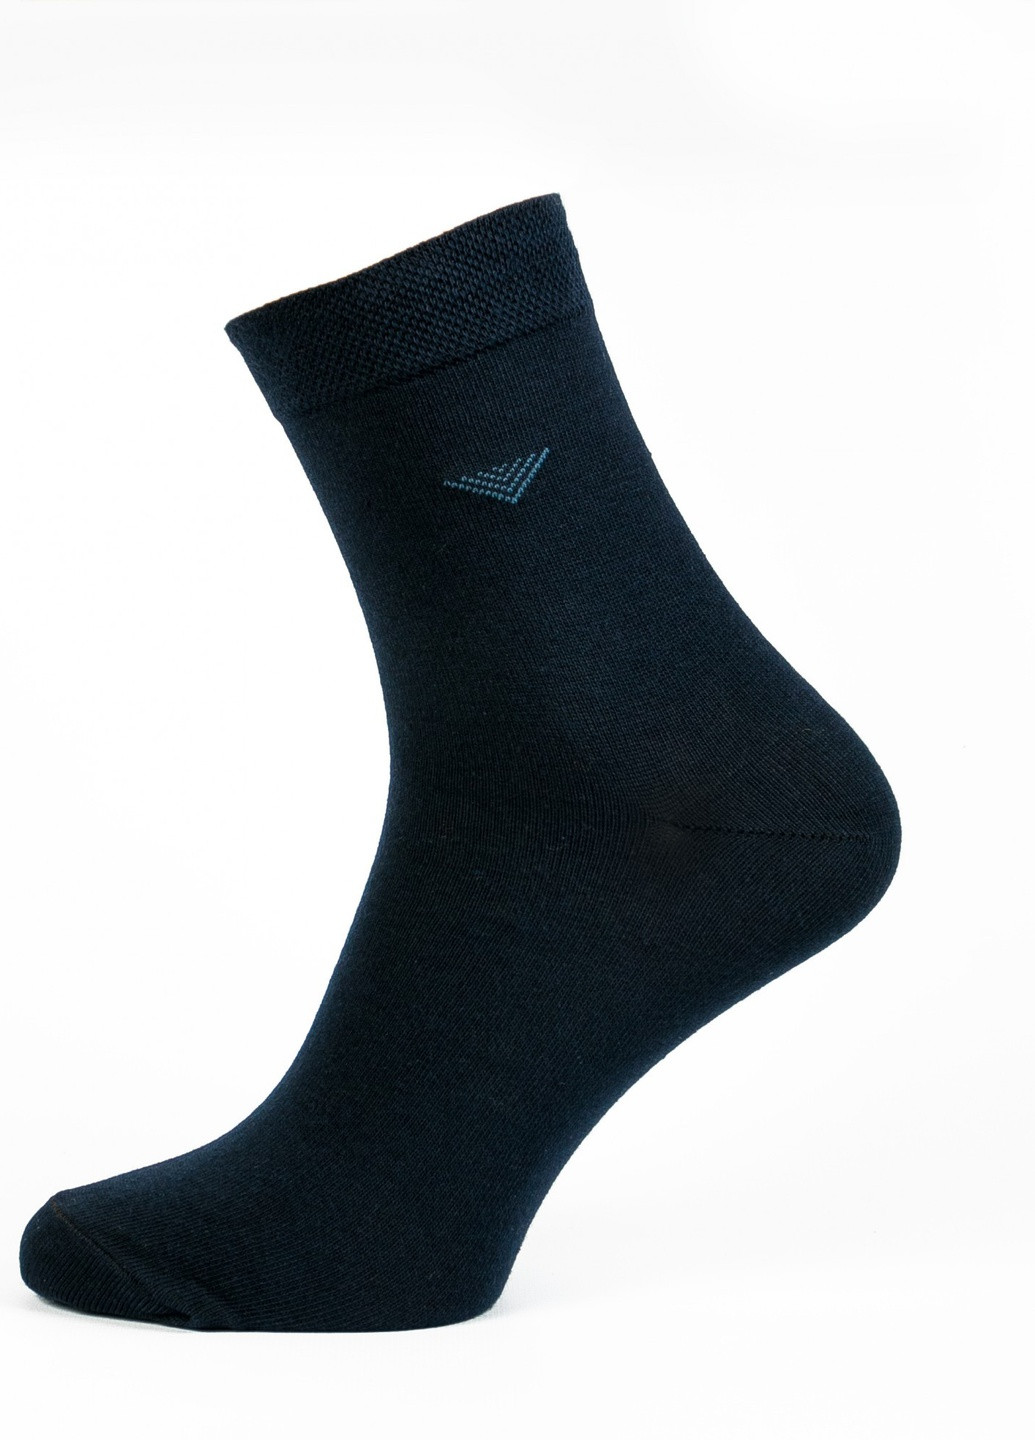 Шкарпетки чоловічі ТМ "Нова пара" 417 НОВА ПАРА середня висота (257108223)